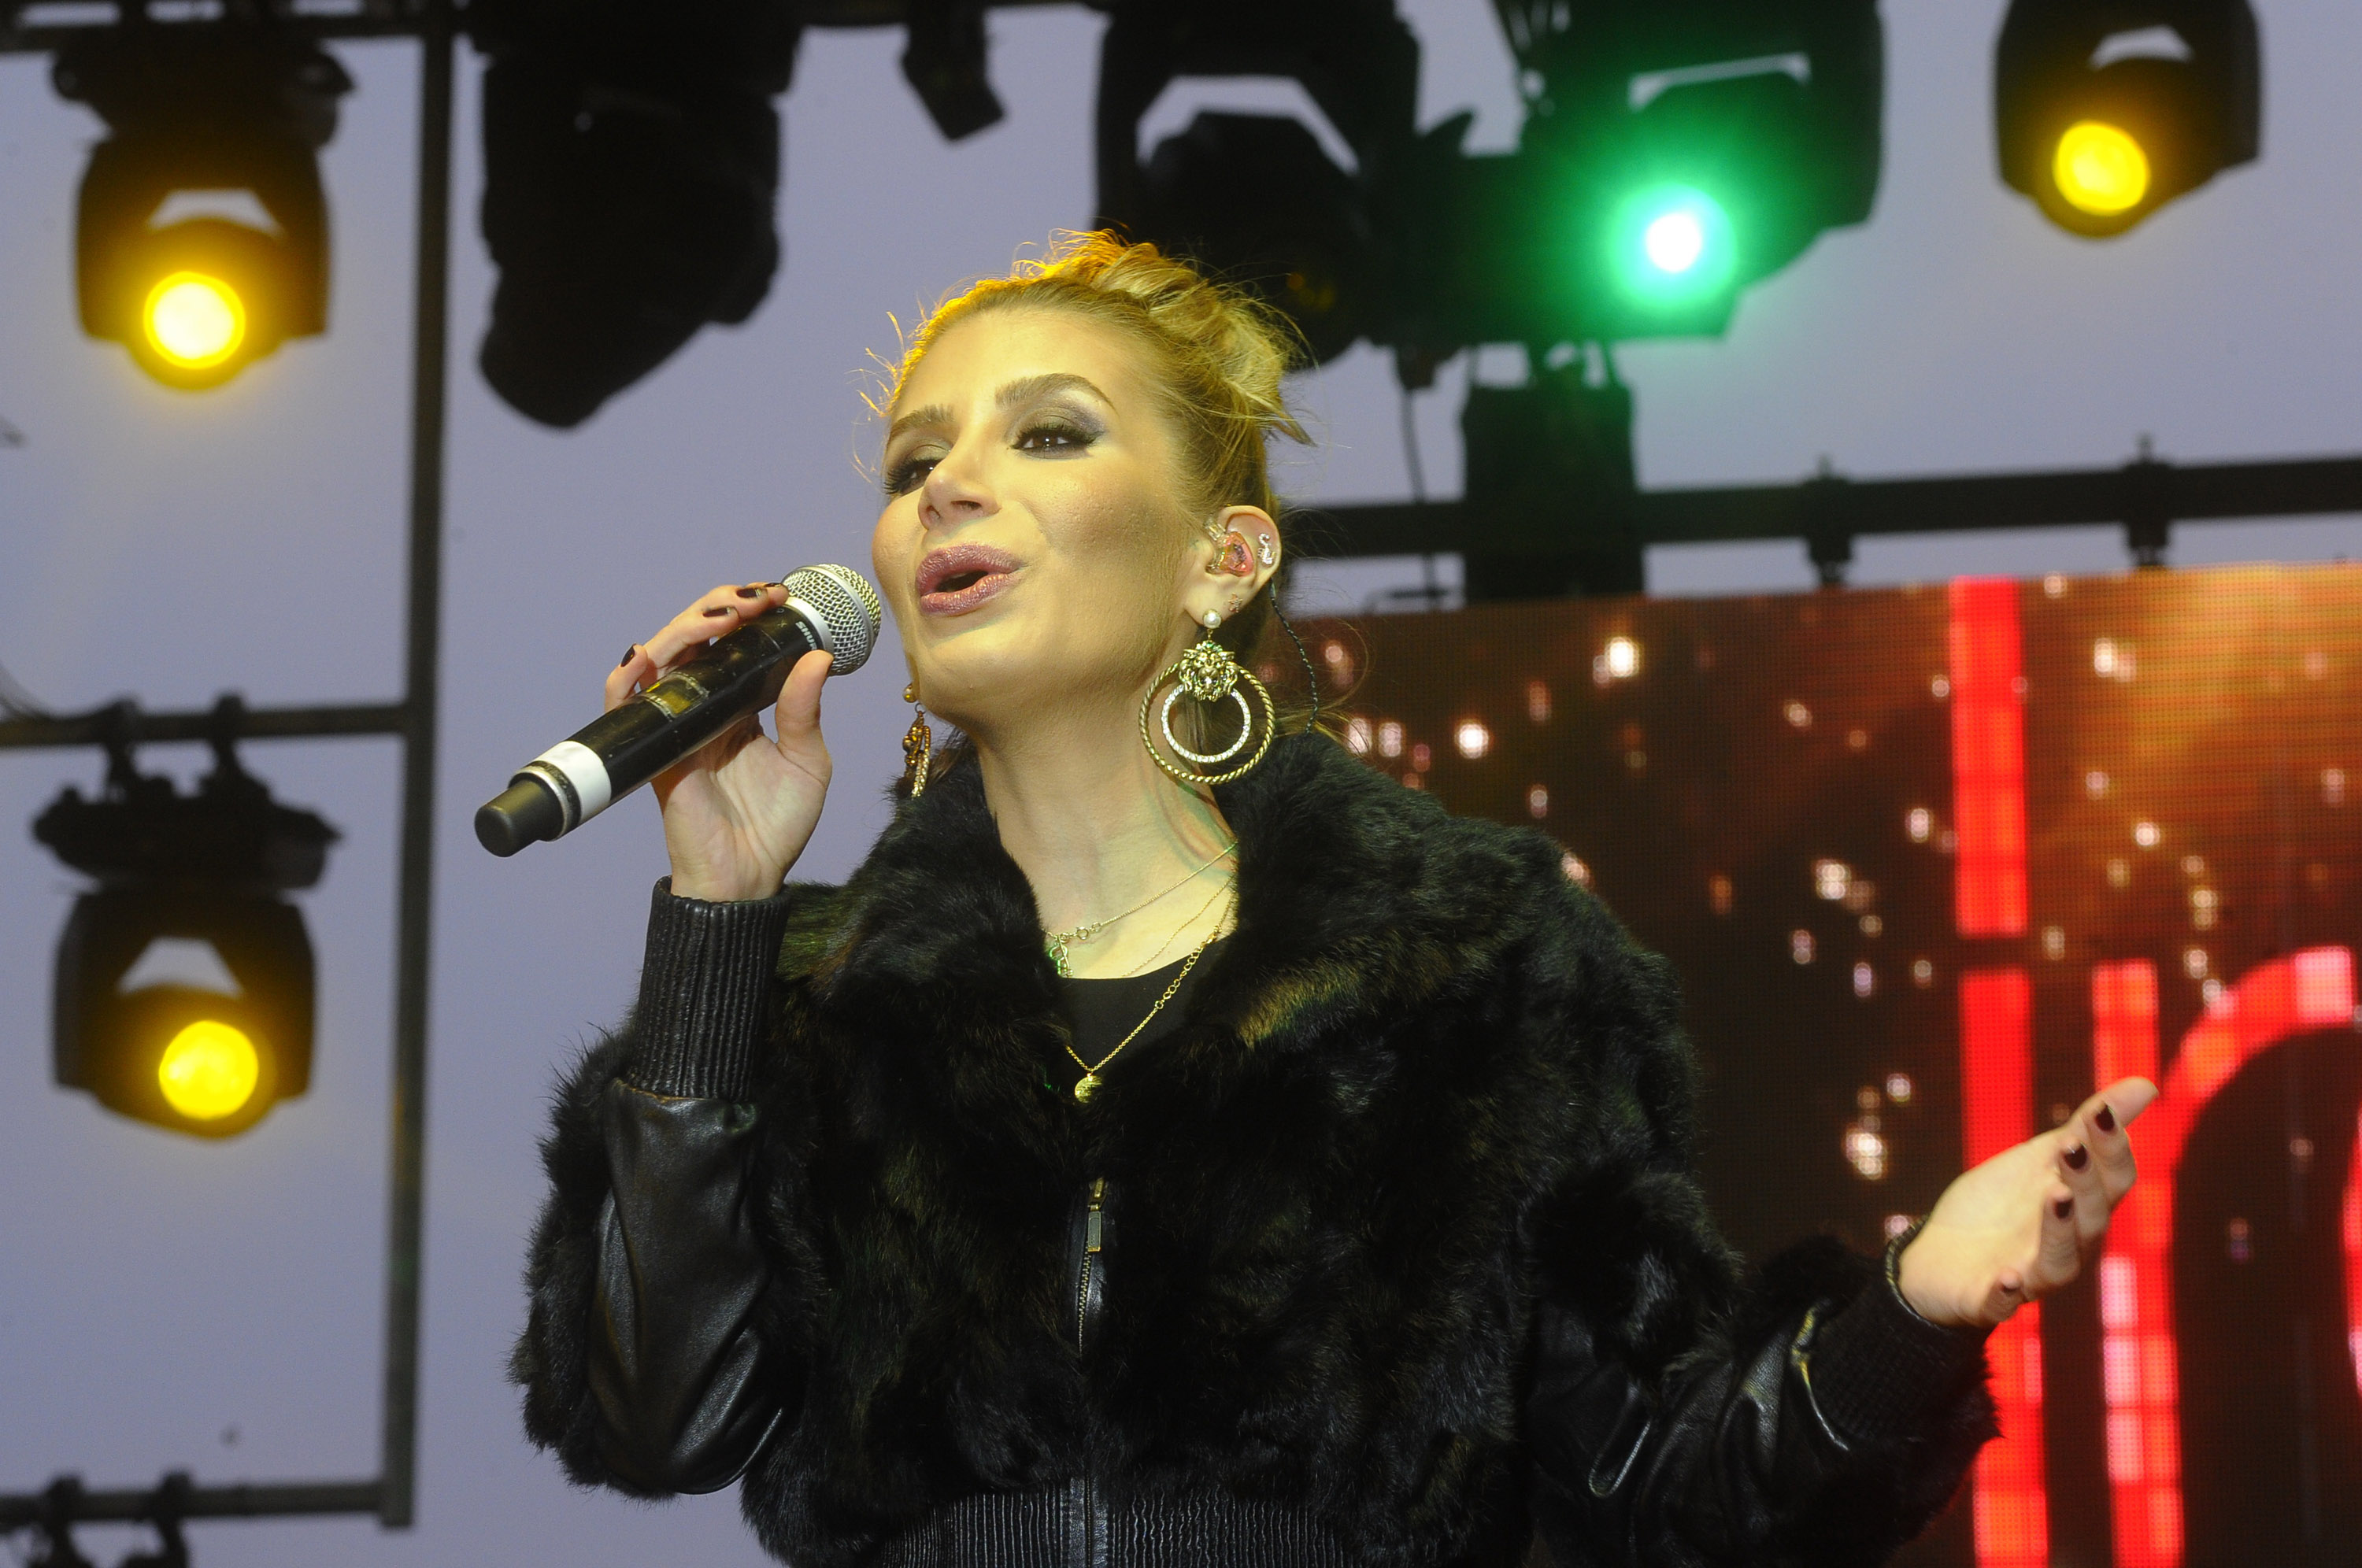 İrem Derici yeni single'ının ilk konserini İstanbul'da verdi-1991